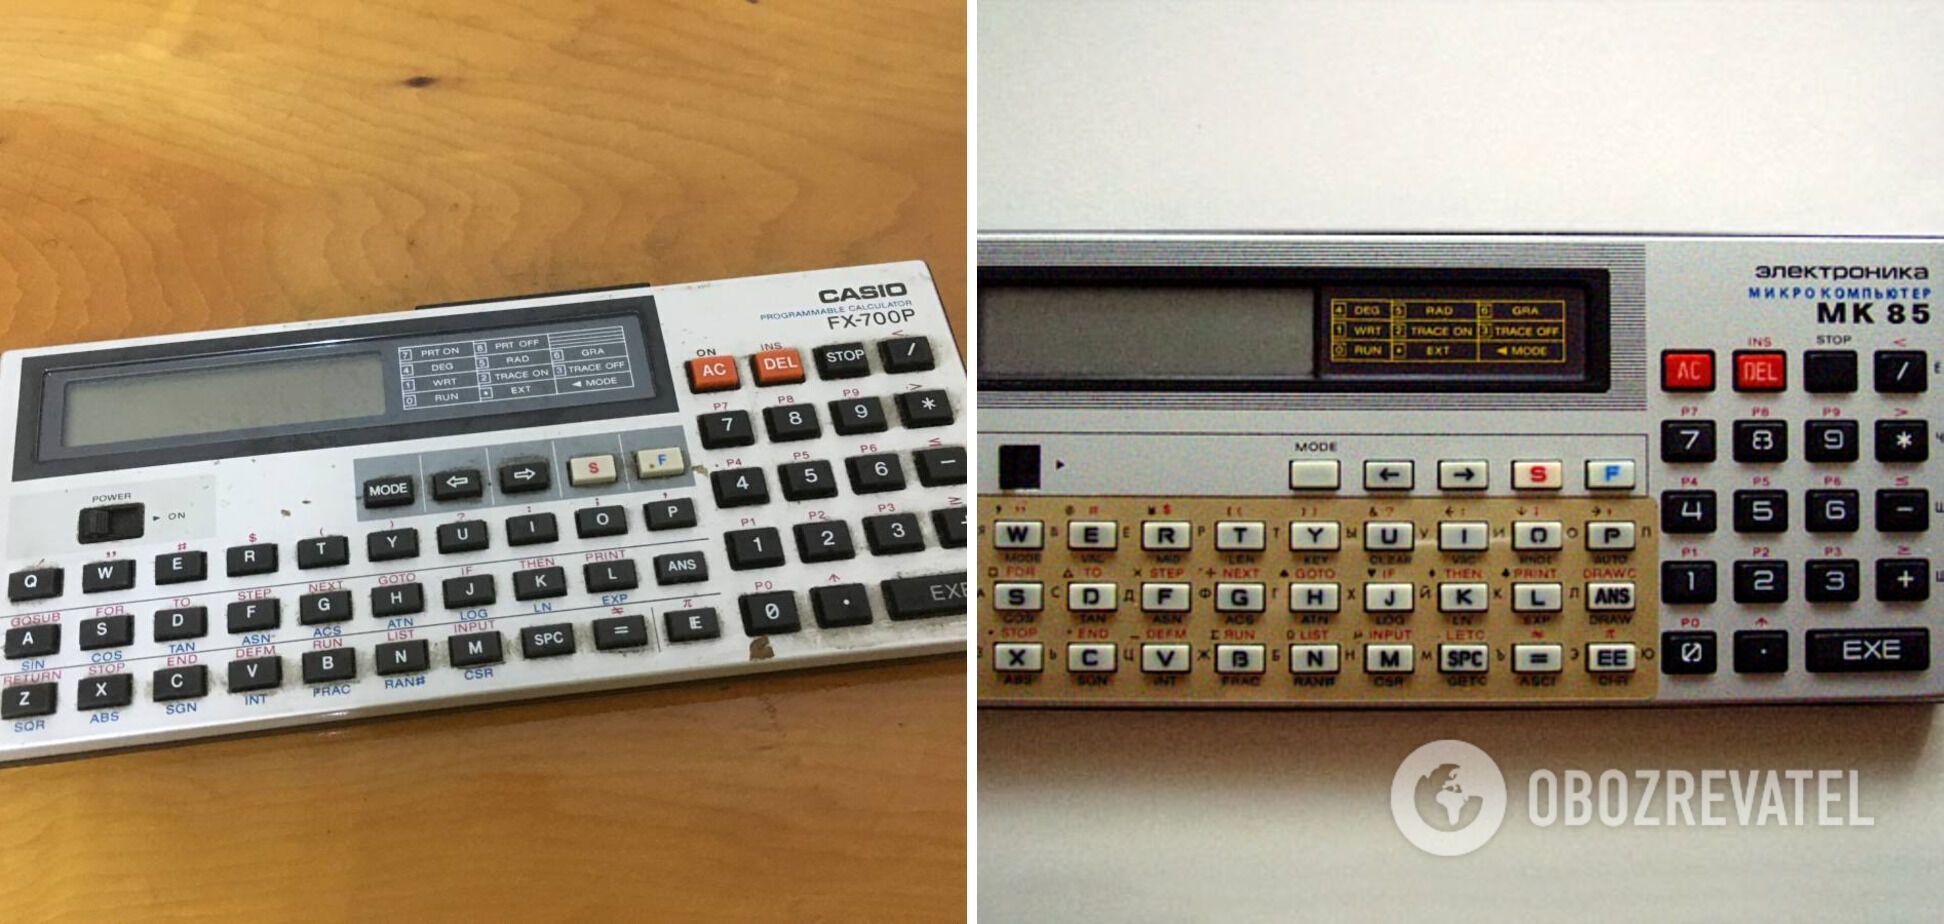 Зліва калькулятор "Casio FX-700P", а справа – «Електроніка МК-85».